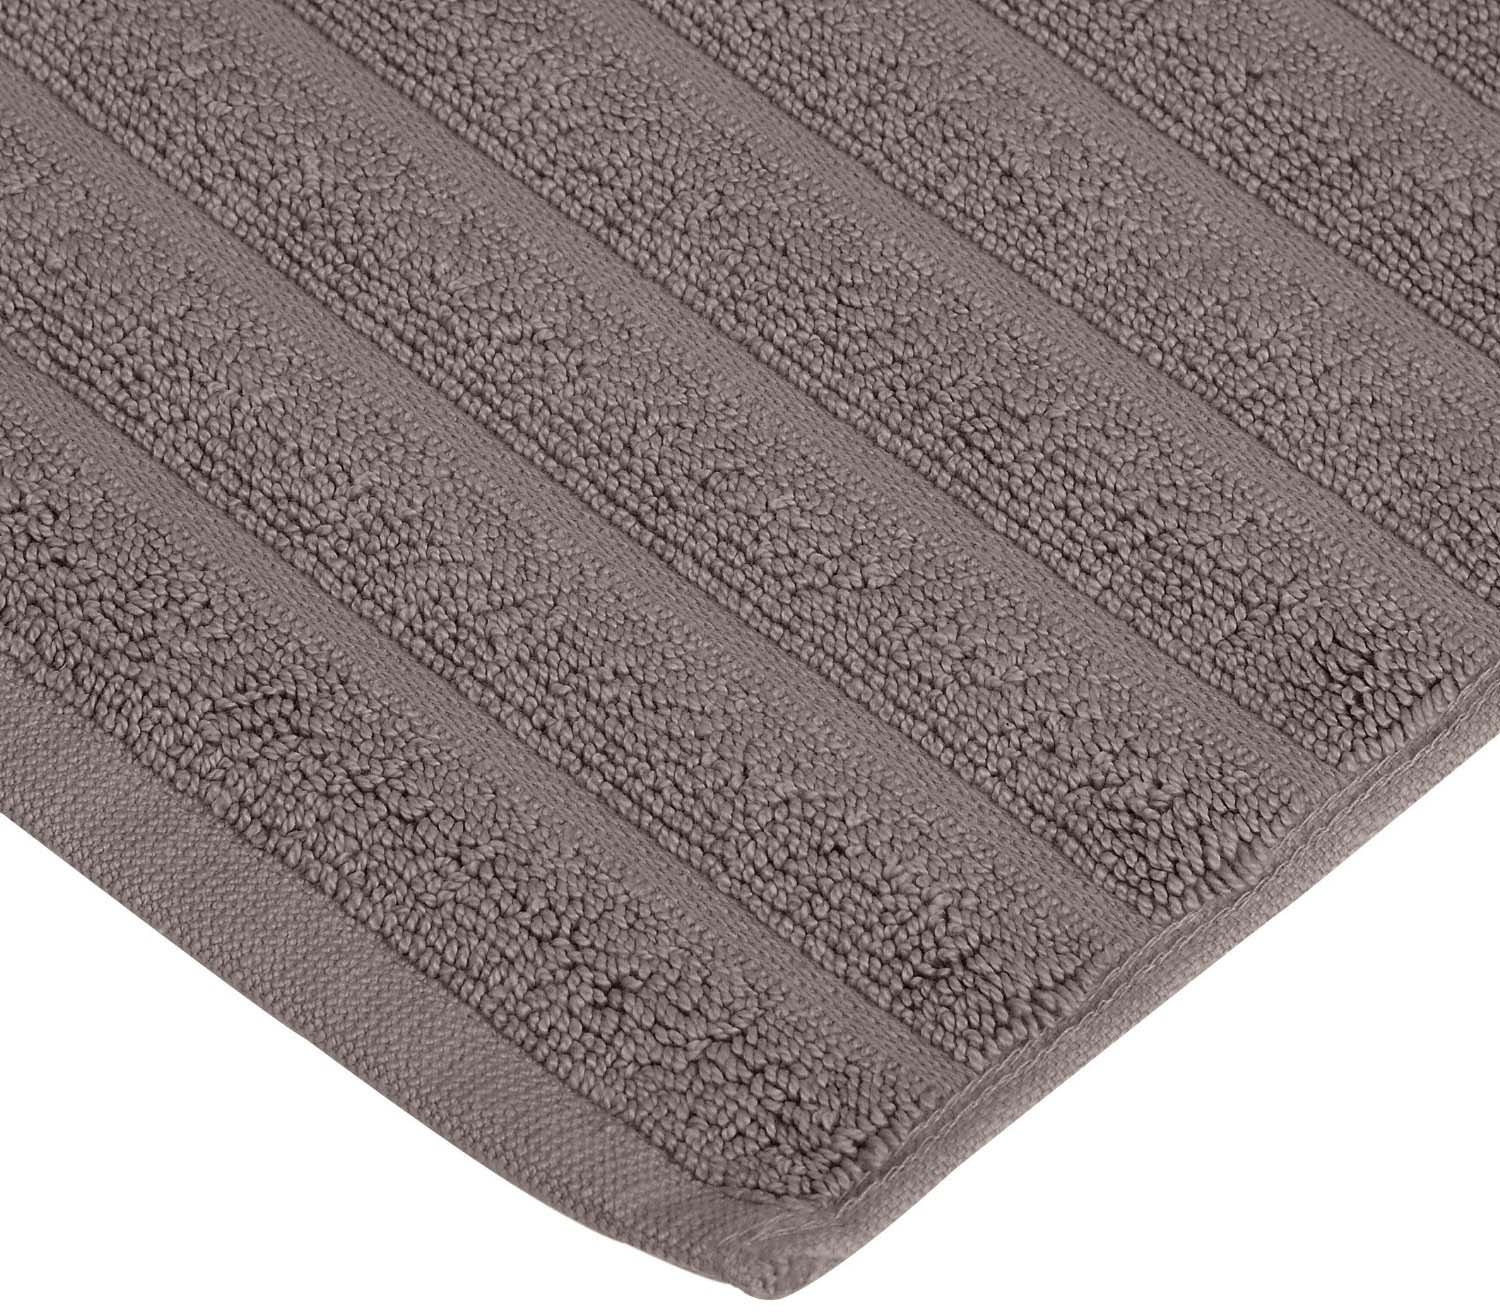 Lined 100% Cotton 1000 GSM 2-Piece Bath Mat Set - Graphite